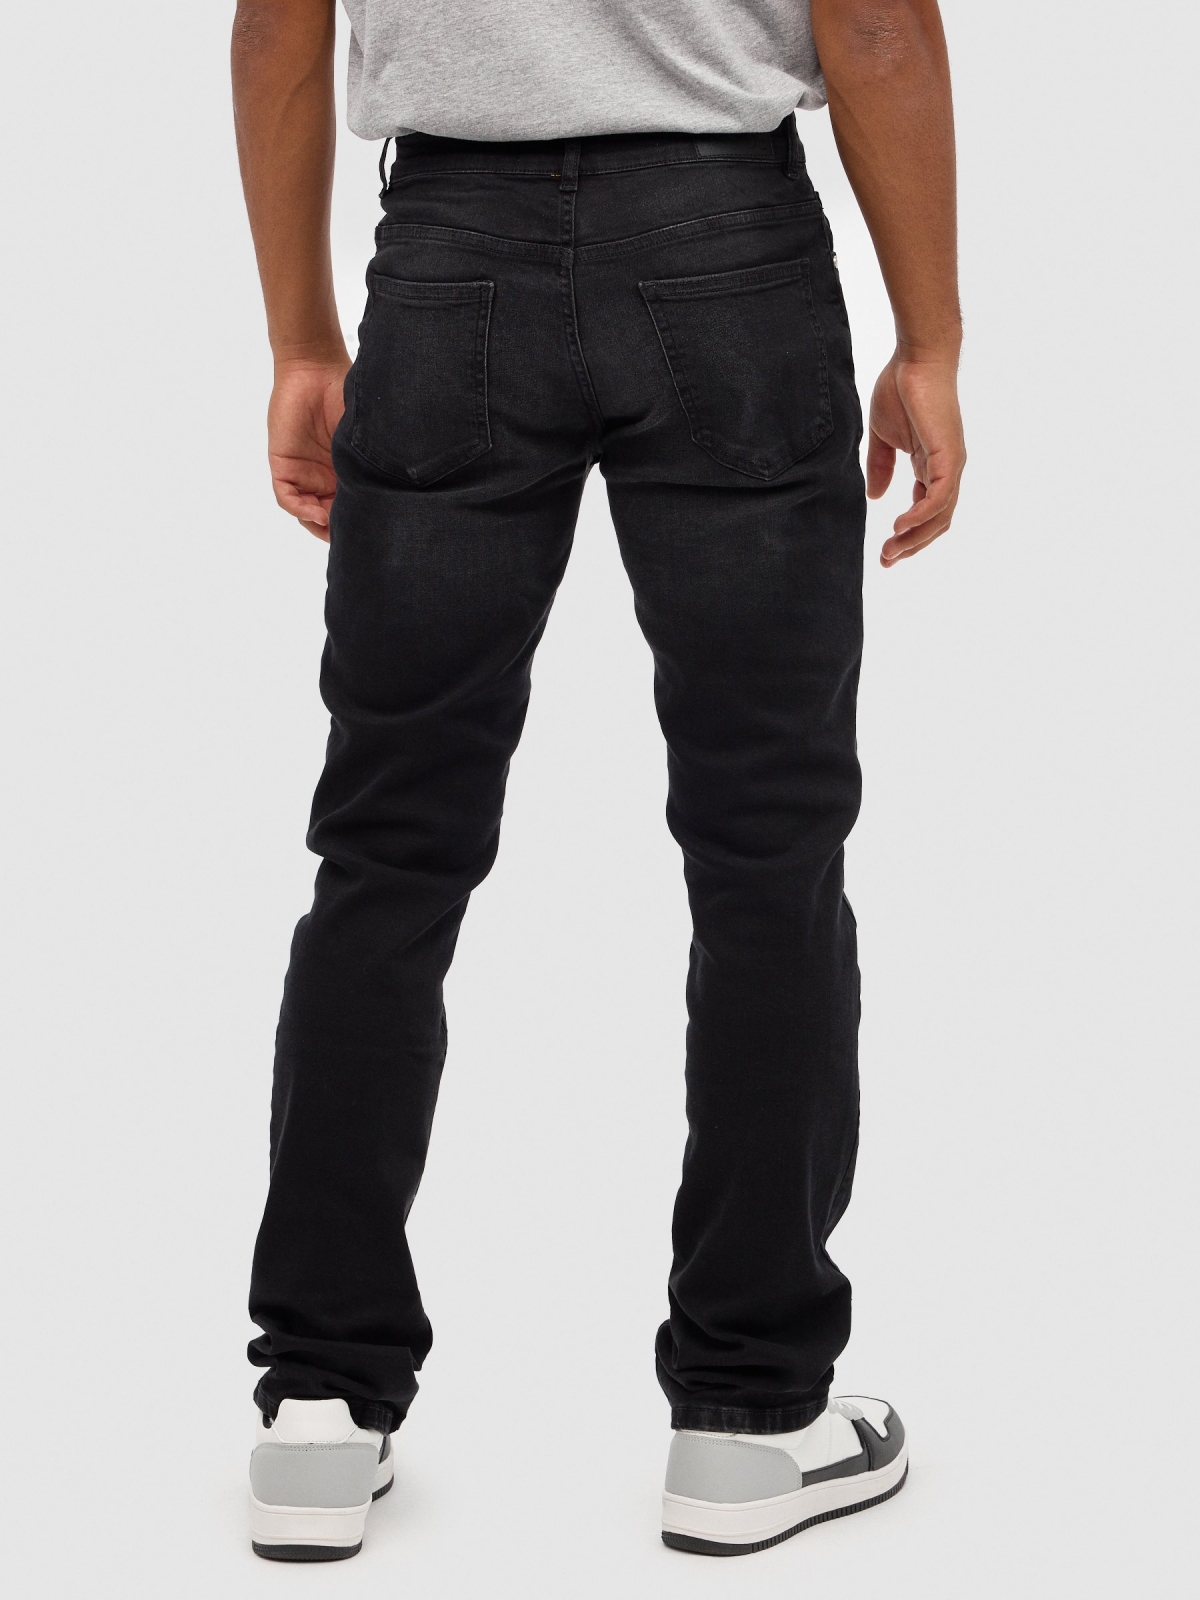 Jeans regular rotos negro vista media trasera